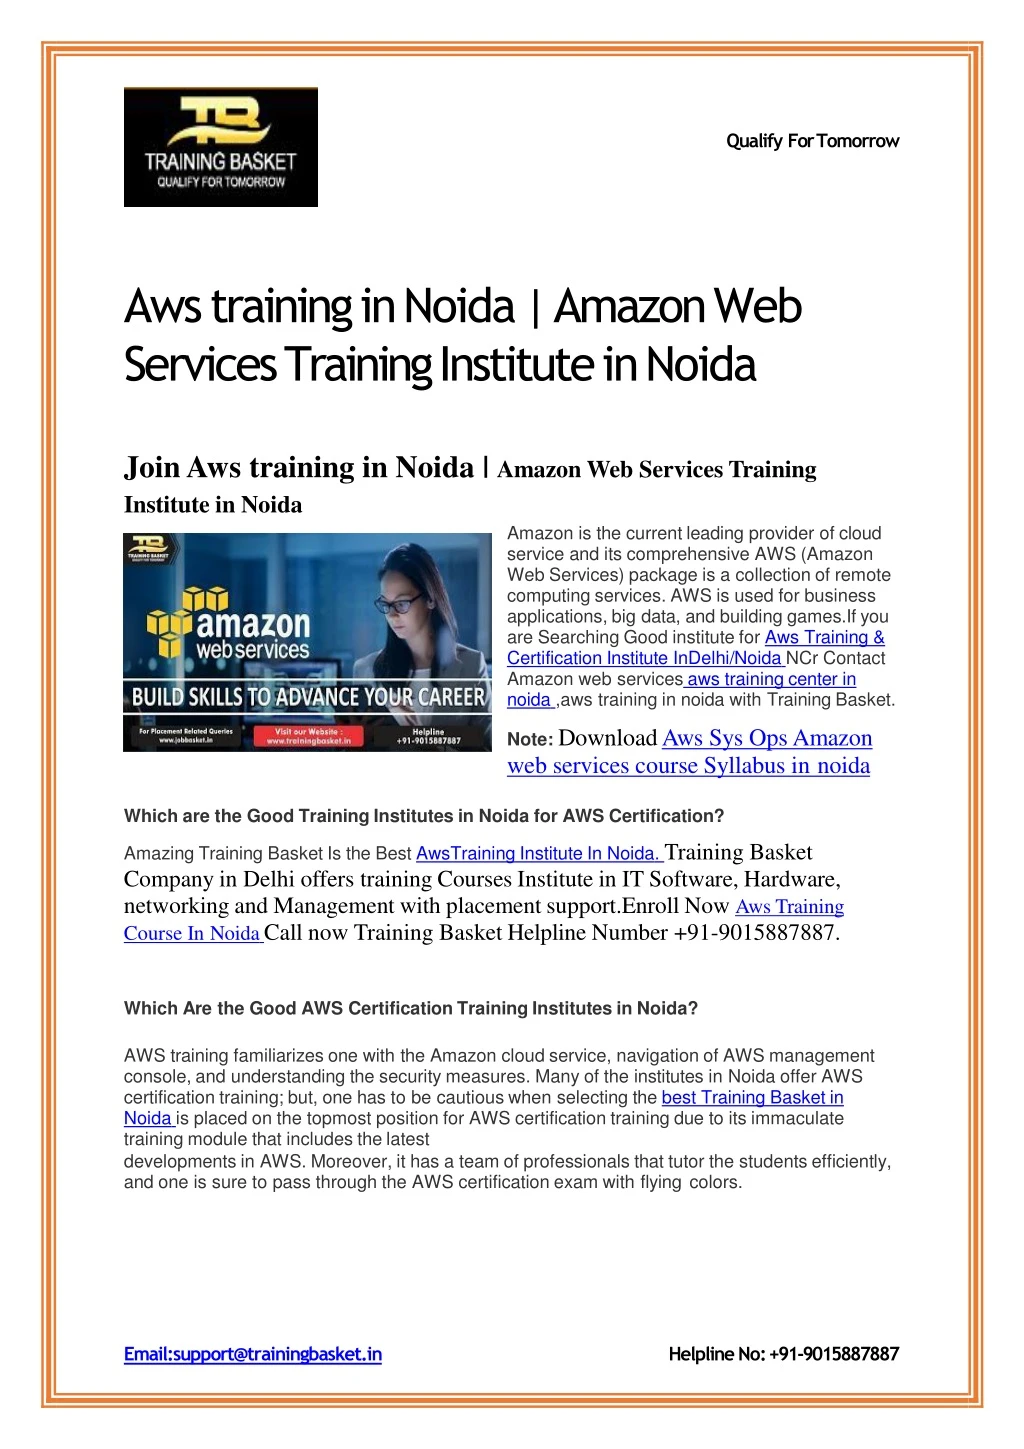 aws training in noida amazon web services training institute in noida